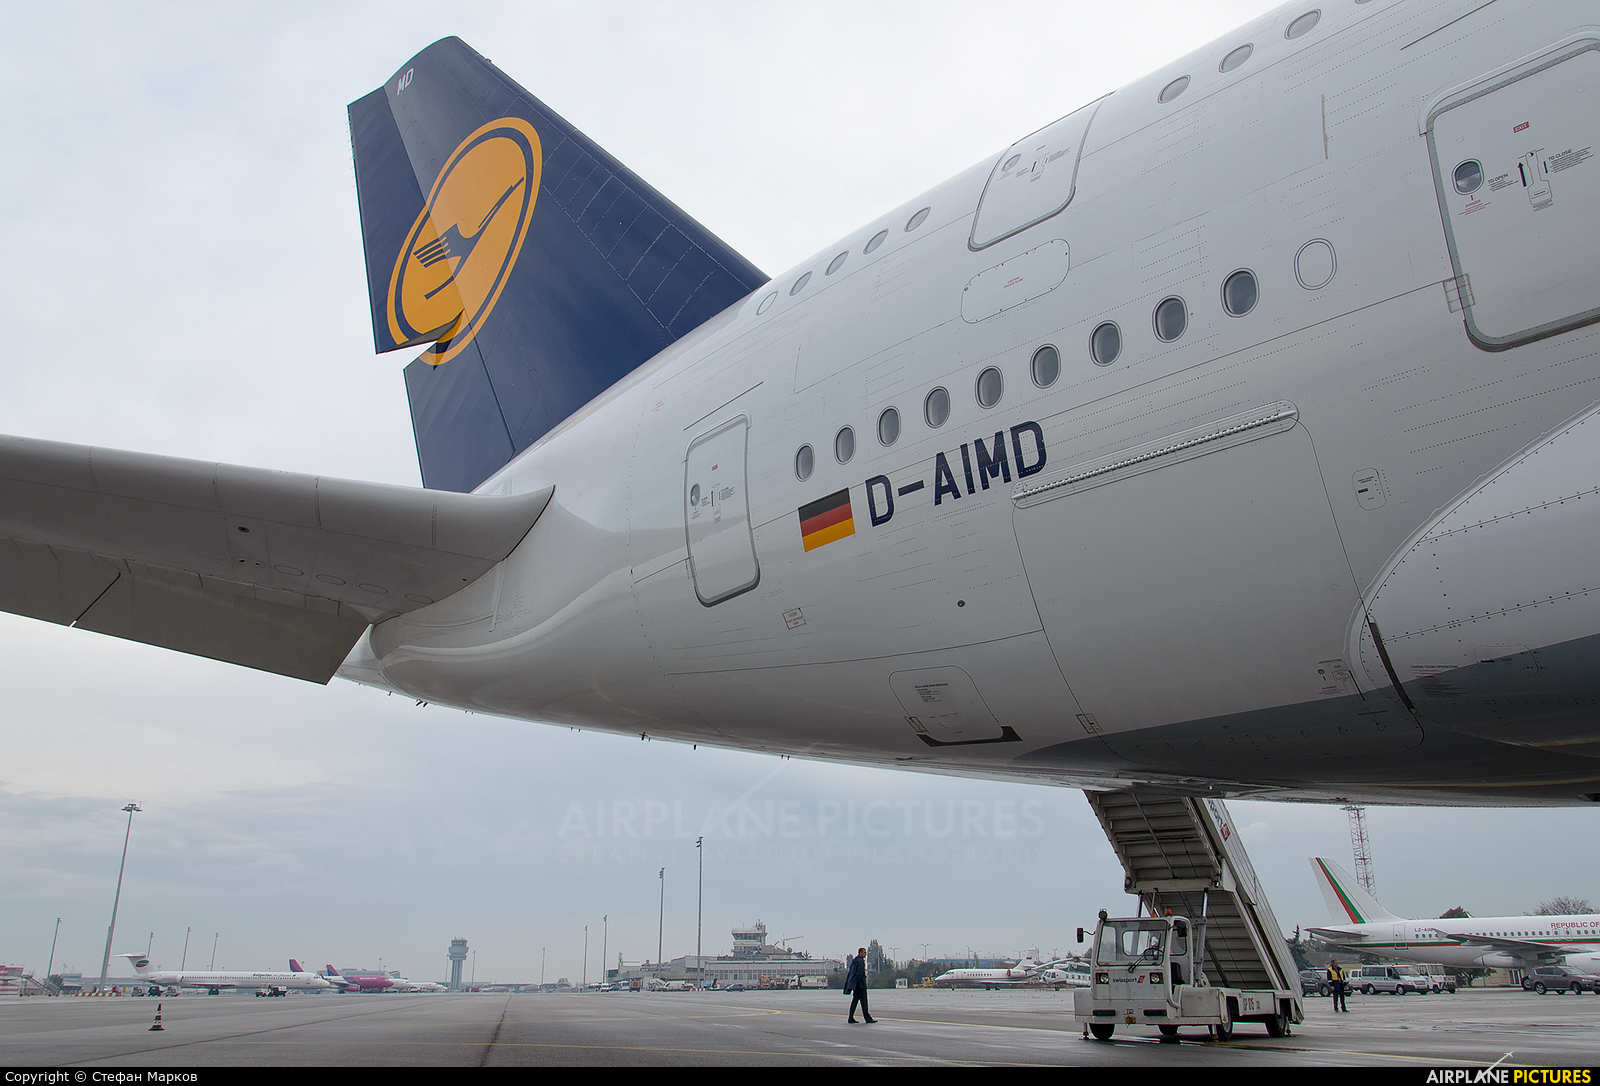 Lufthansa D-AIMD aircraft at Sofia